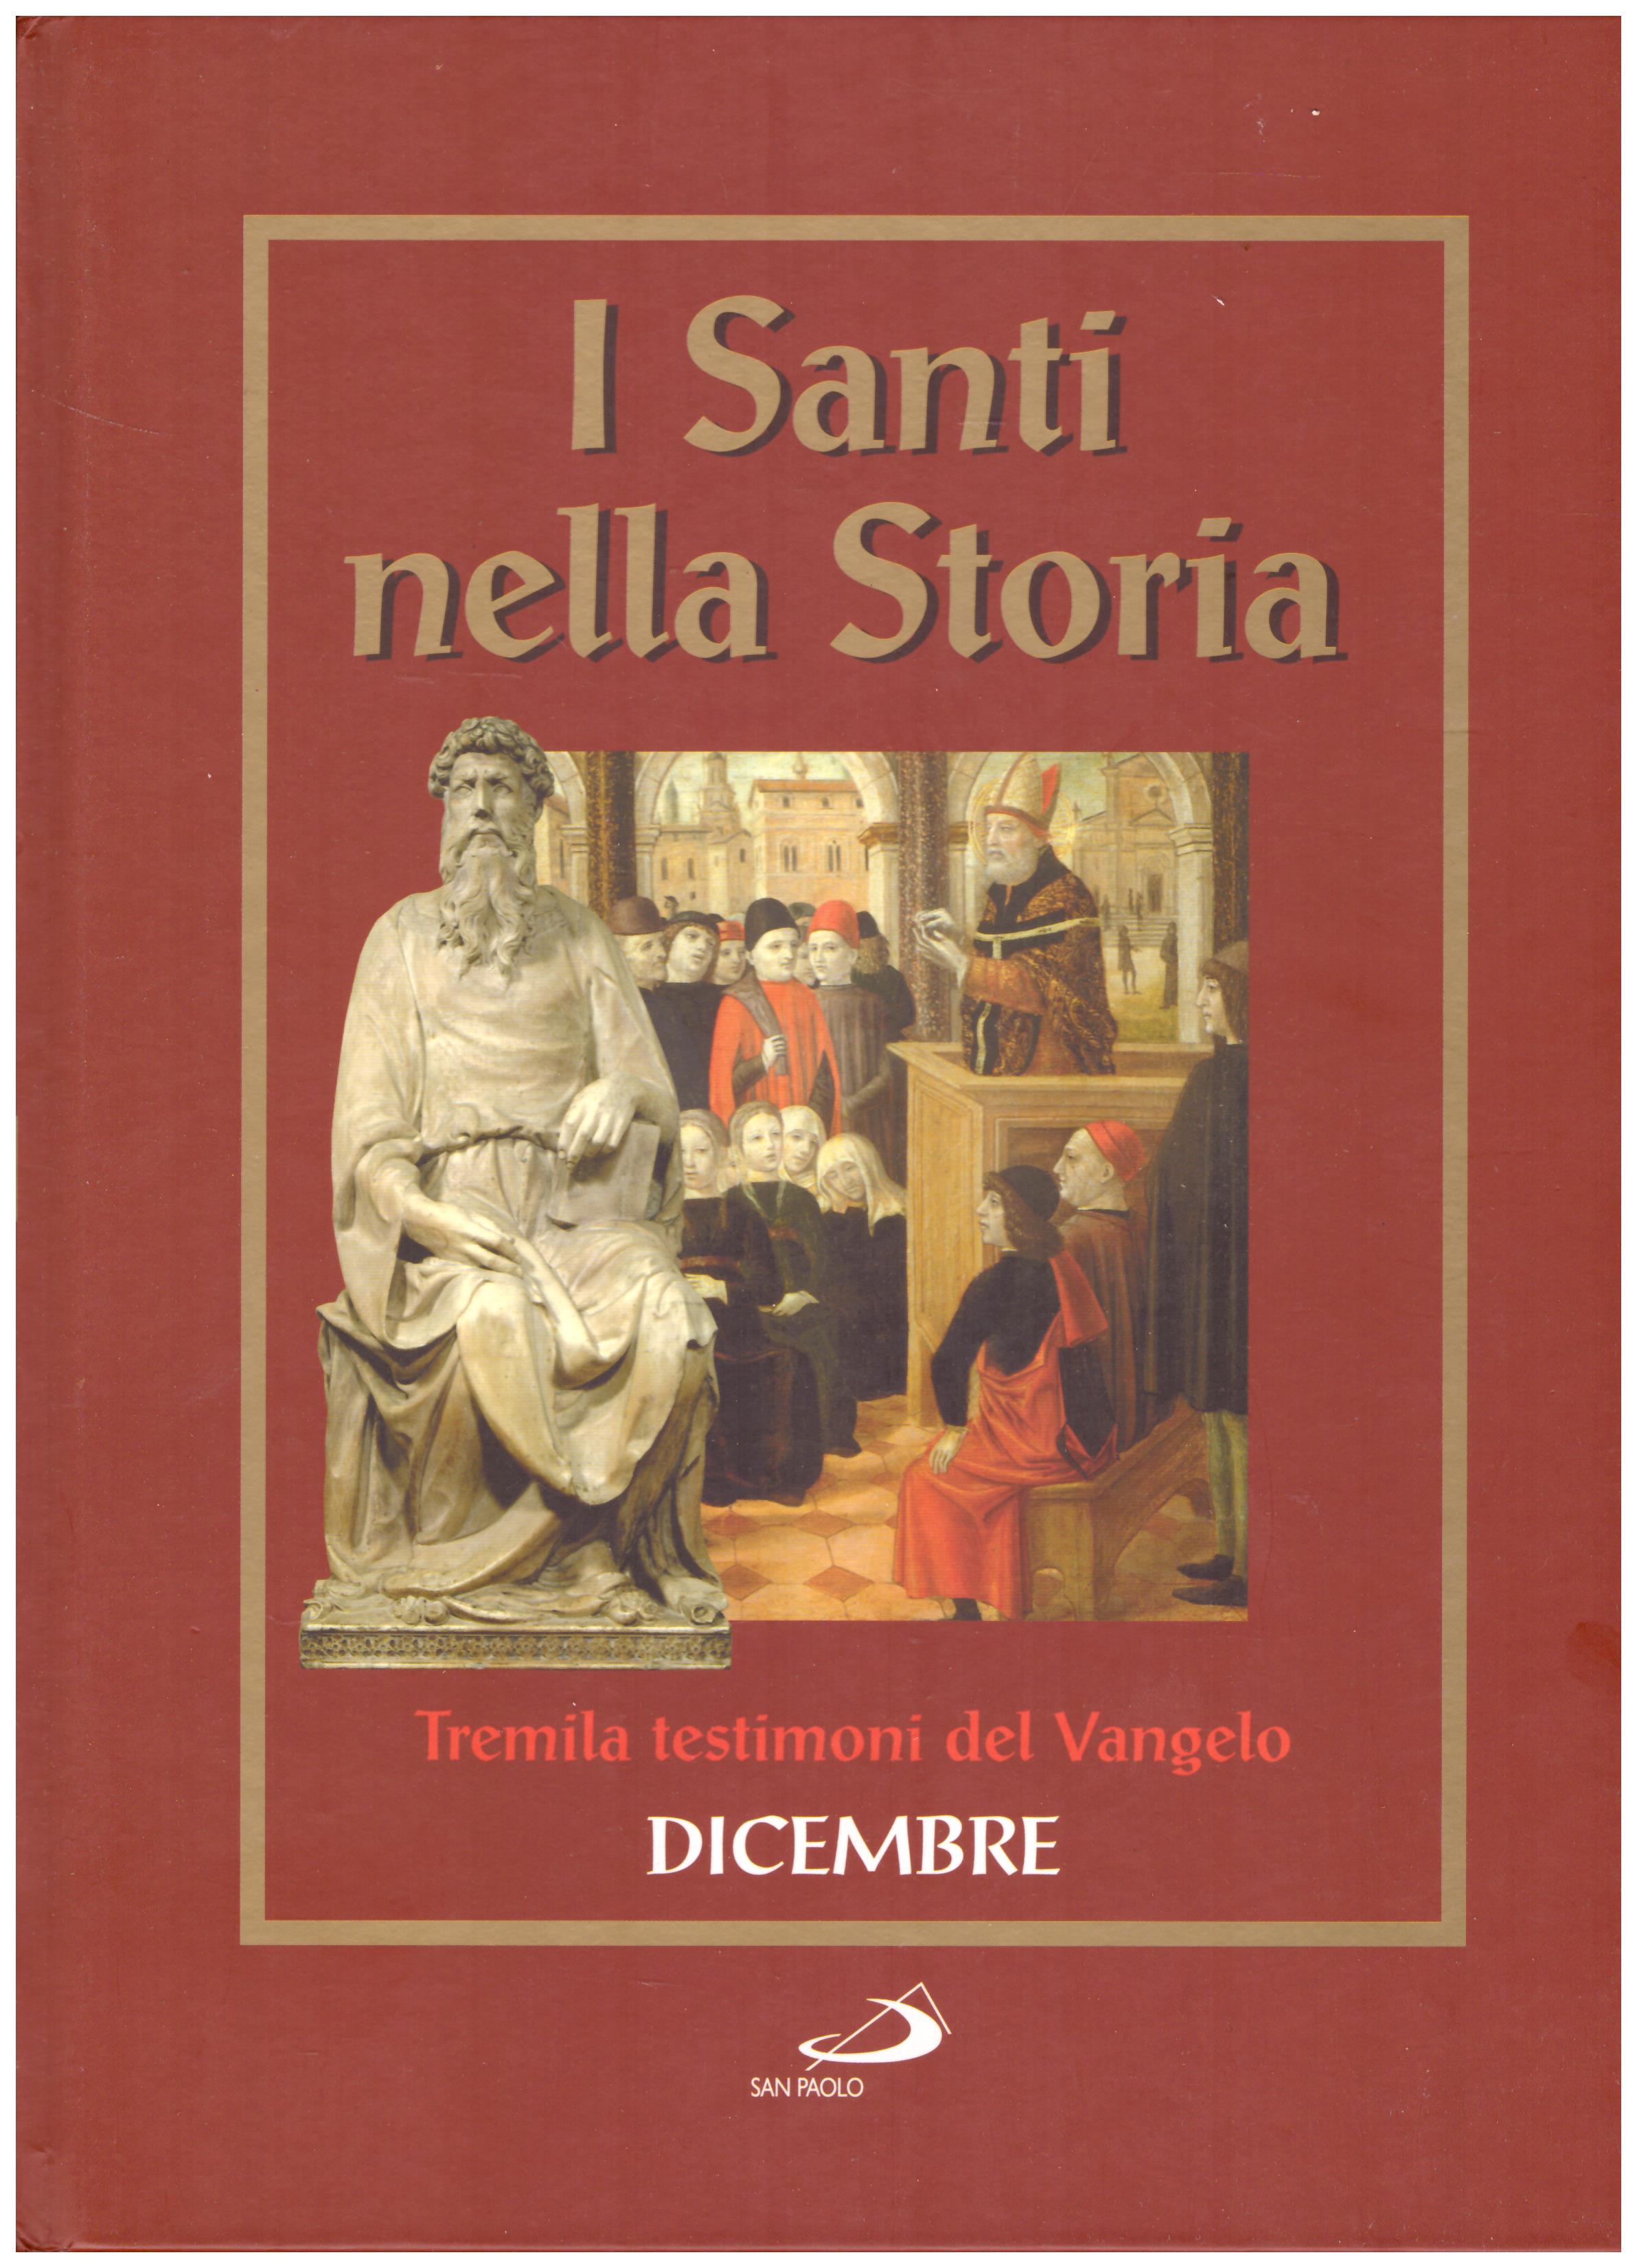 Titolo: I santi nella storia, Dicembre Autore: AA.VV.  Editore: San Paolo, 2006